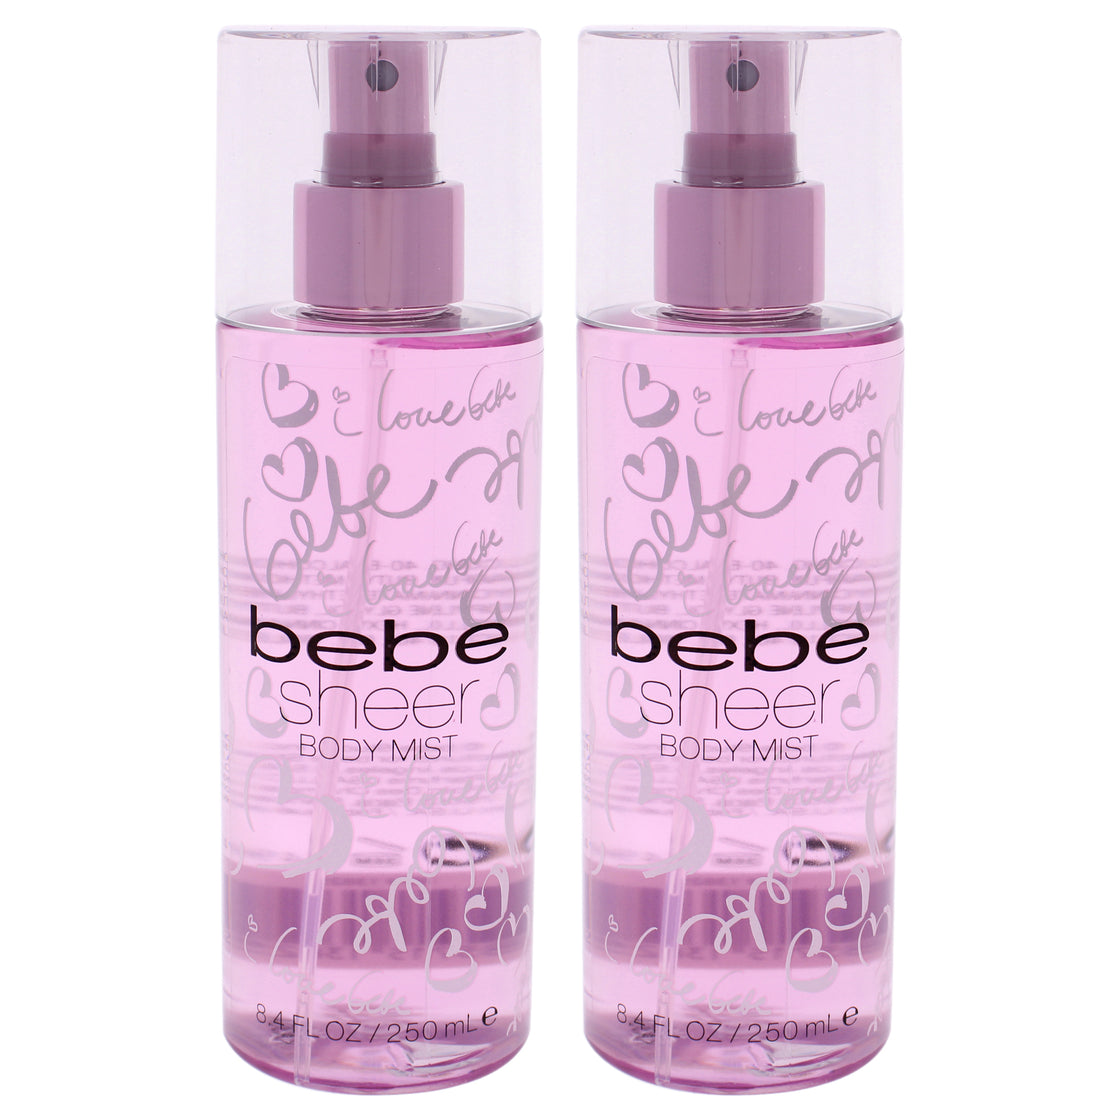 Bebe Sheer by Bebe for Women - 8.4 oz Body Mist - Pack of 2